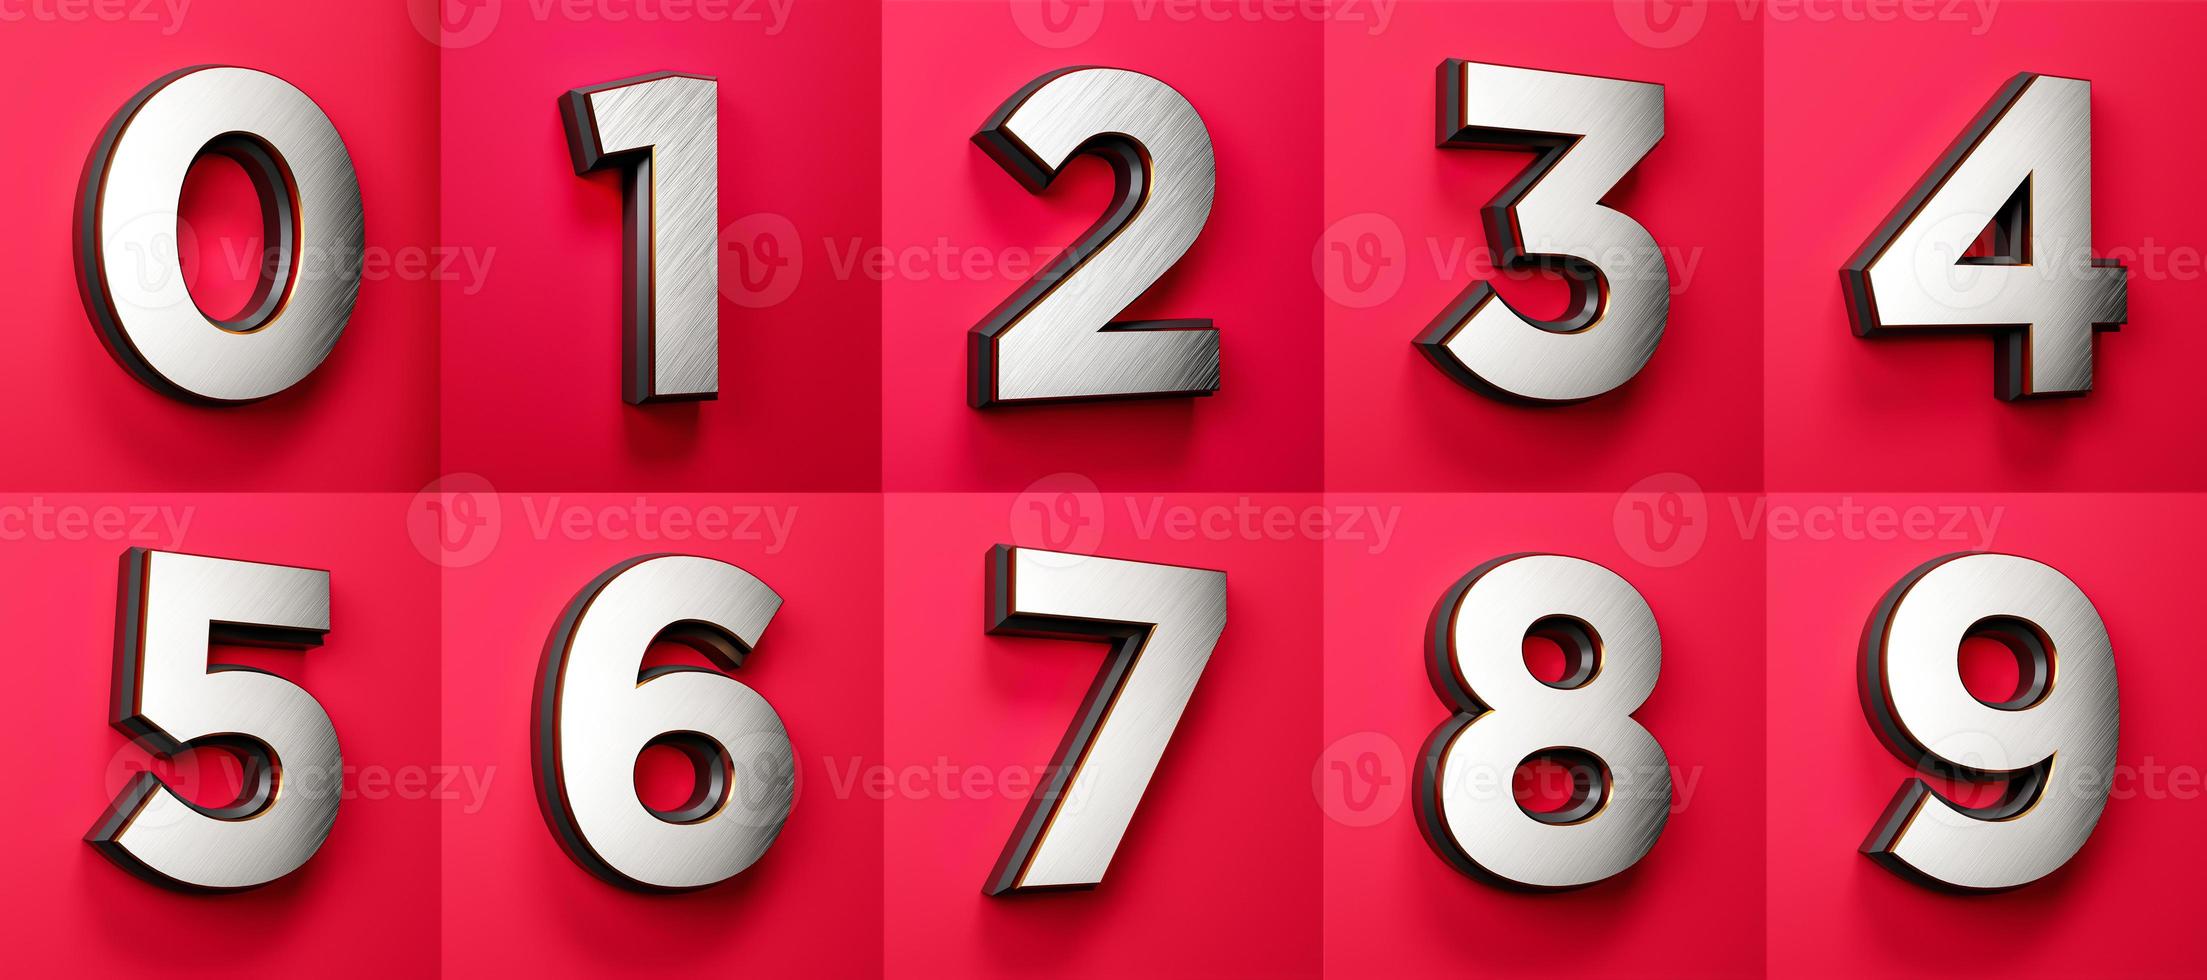 0, 1, 2, 3, 4, 5, 6, 7, 8, 9, witte zilverfolie nummers zwarte rand ingesteld op een rode achtergrond in 3D-rendering foto